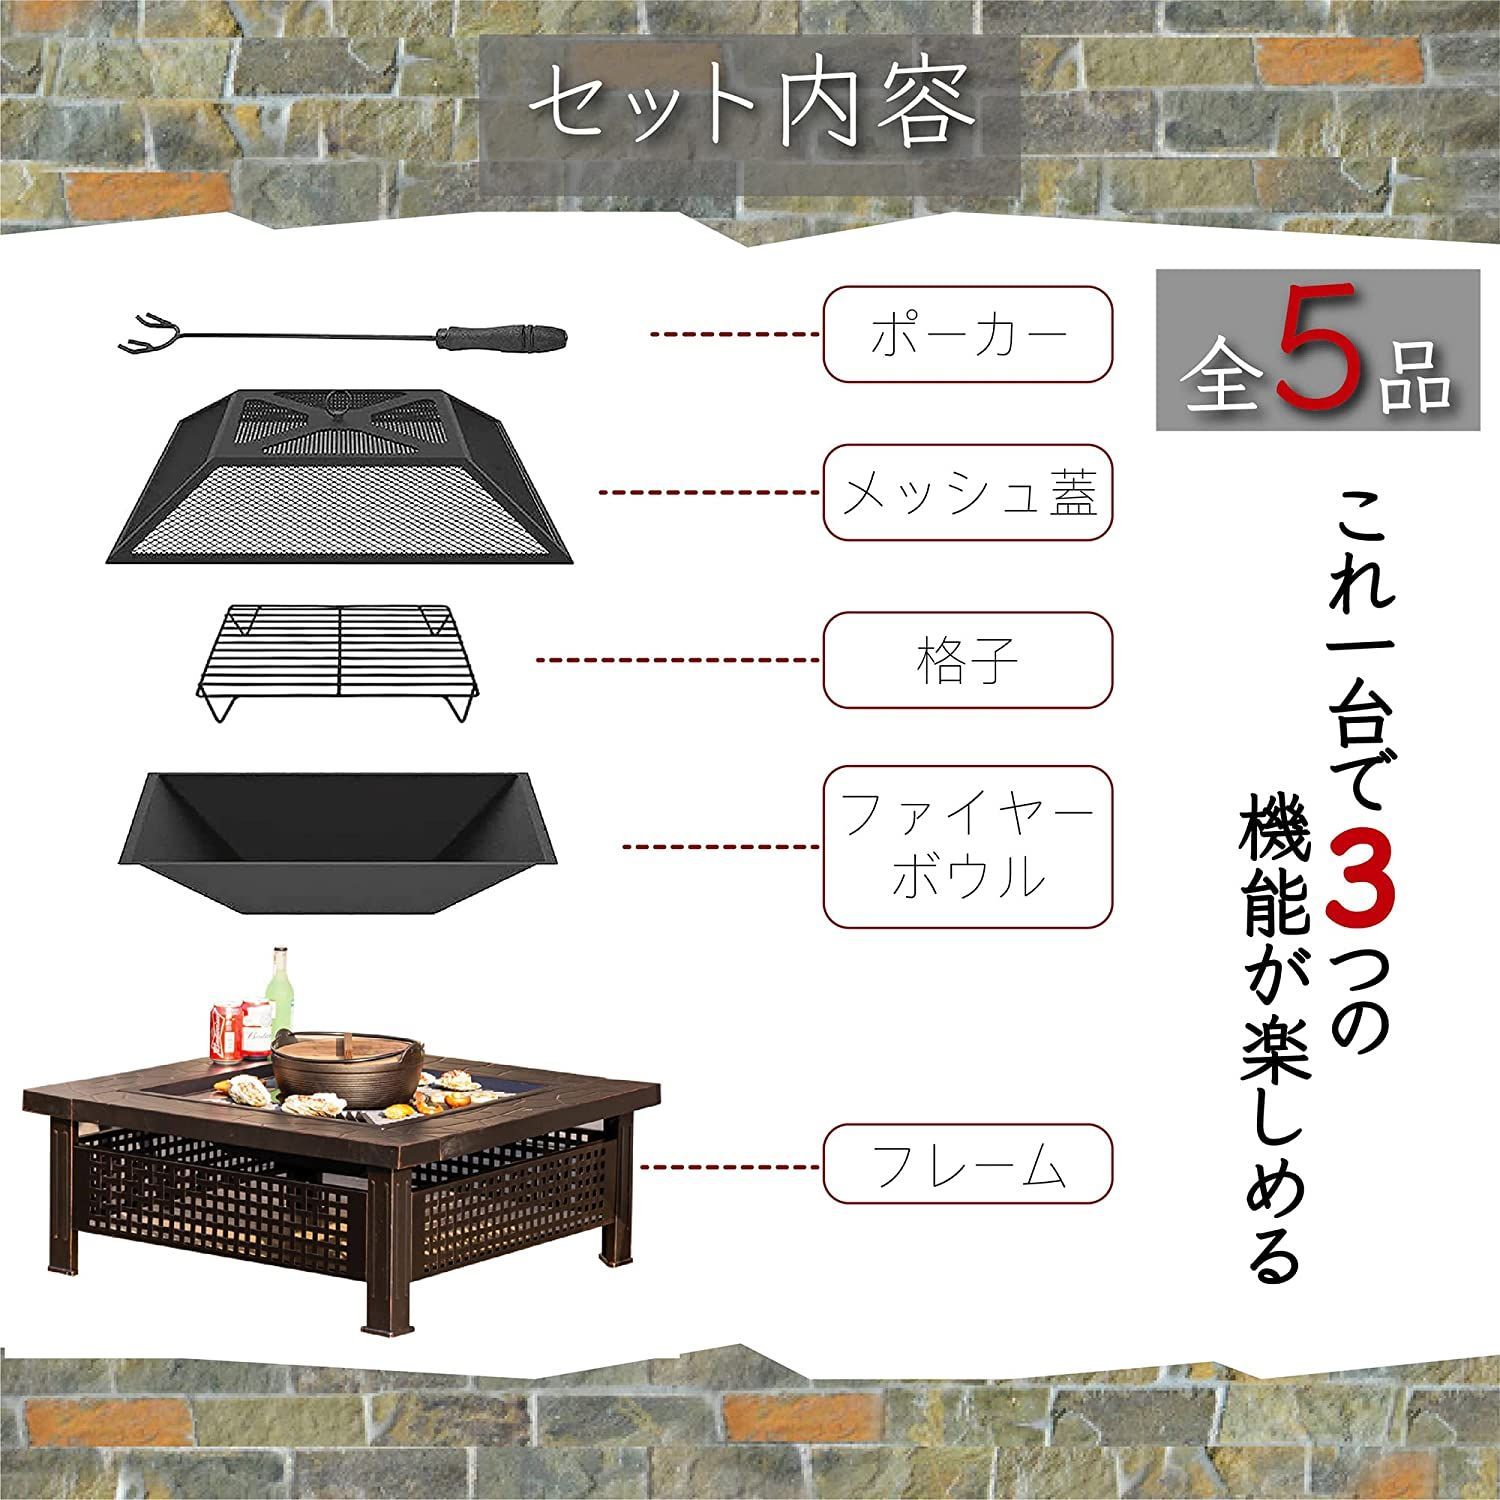 バーベキュー 焚火台 多人用 庭 家族用 大型 テーブル キャンプ (黒の板)